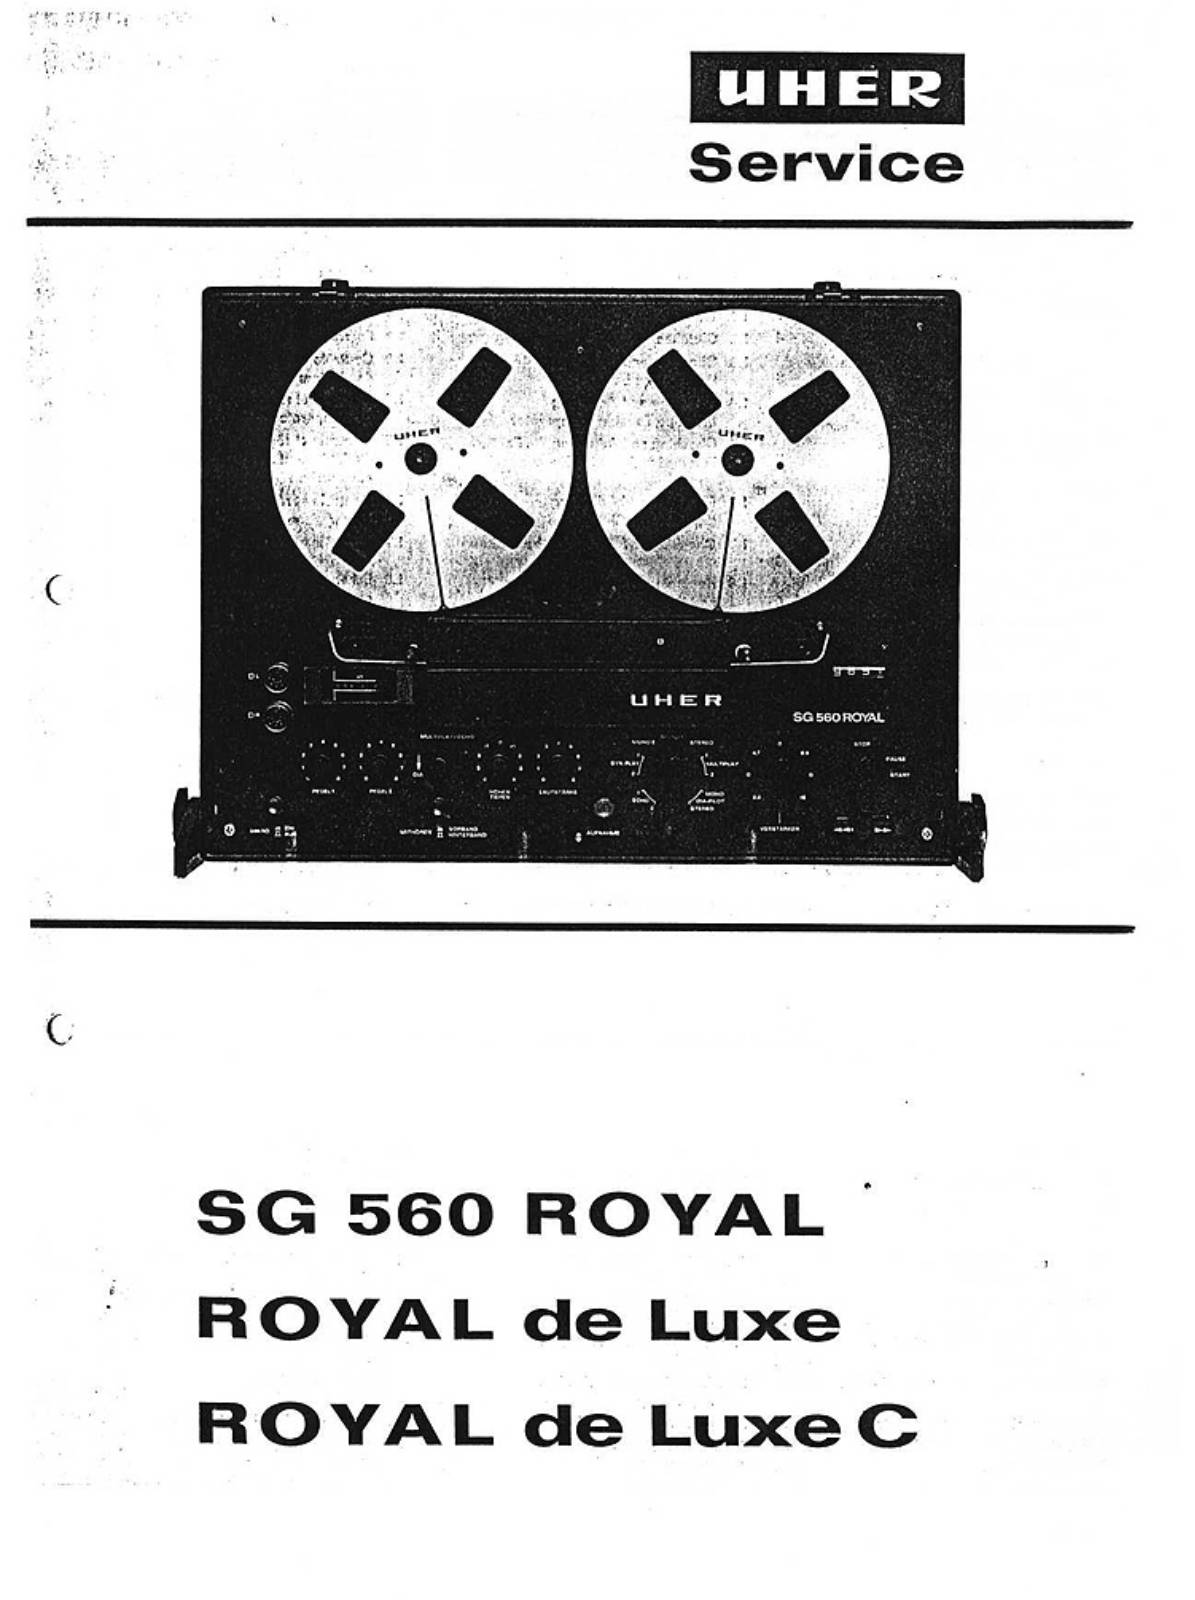 Uher SG 560 Royal (Royal de luxe)